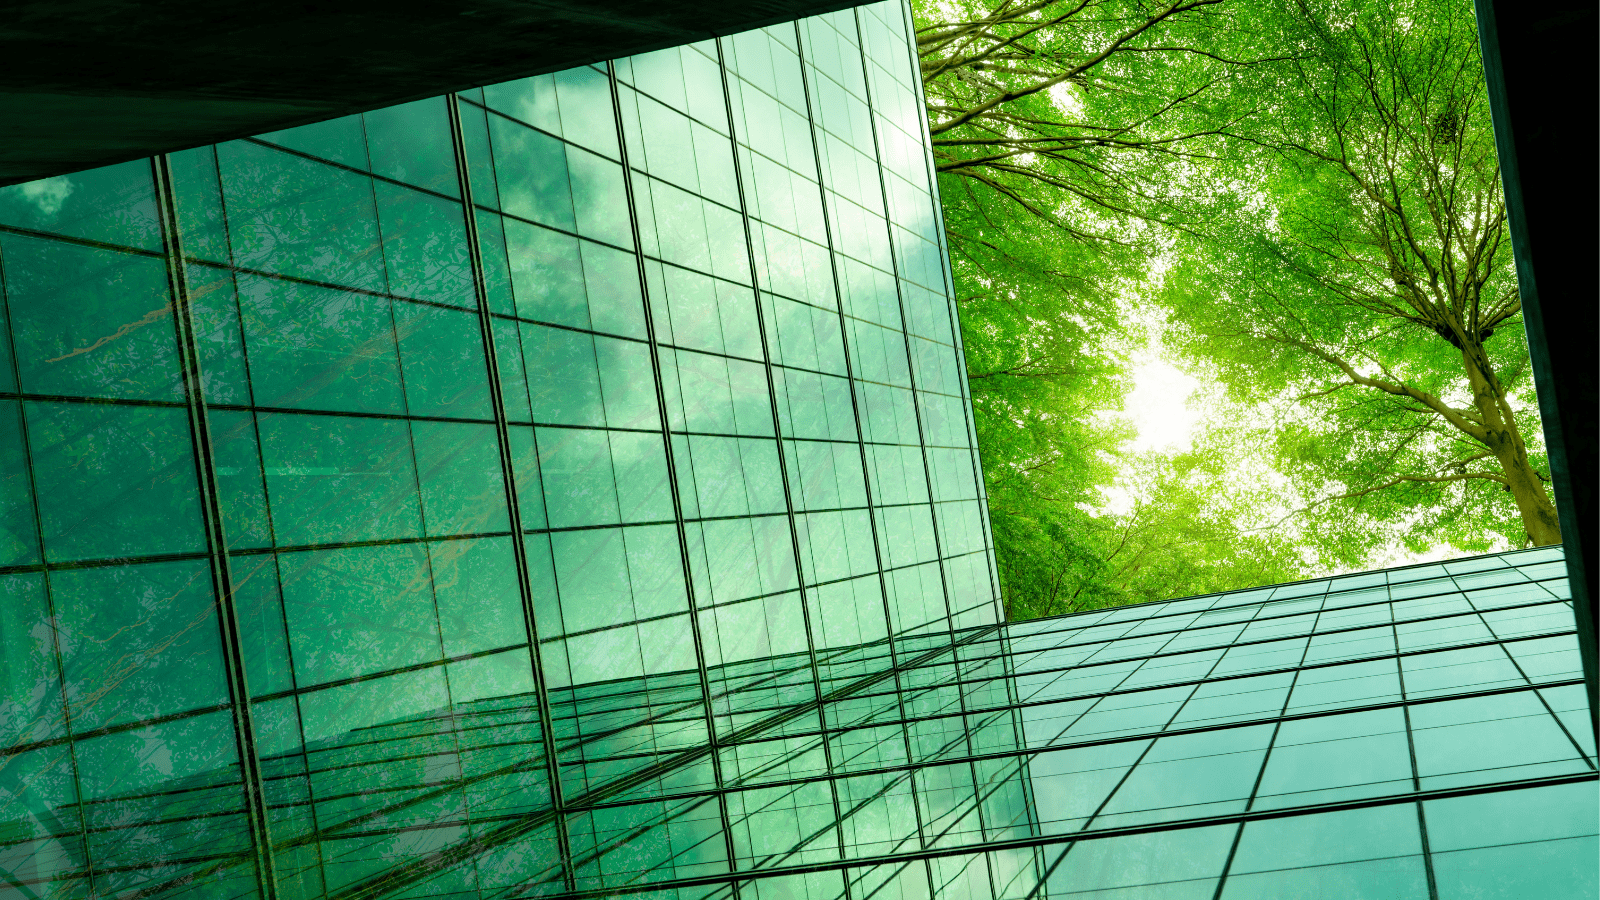 Frøperspektiv af grønne vinduer med udsyn til grønne trækroner i højre hjørne